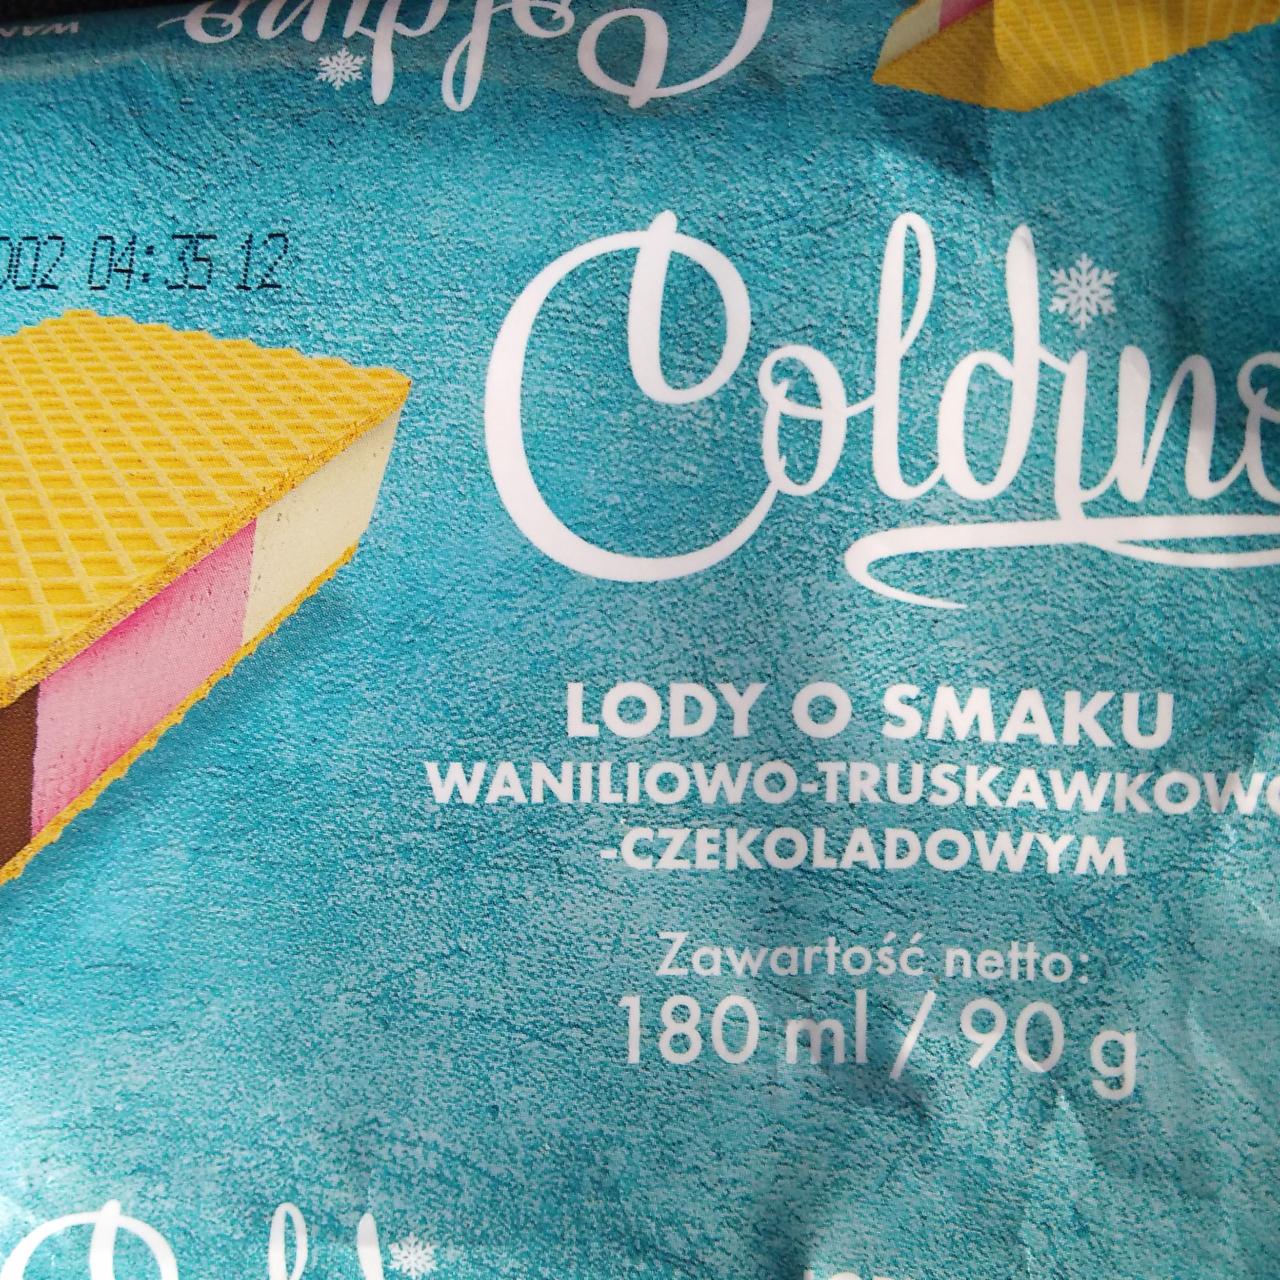 Fotografie - Lody o smaku waniliowo-truskawkowo-czekoladowym Coldino